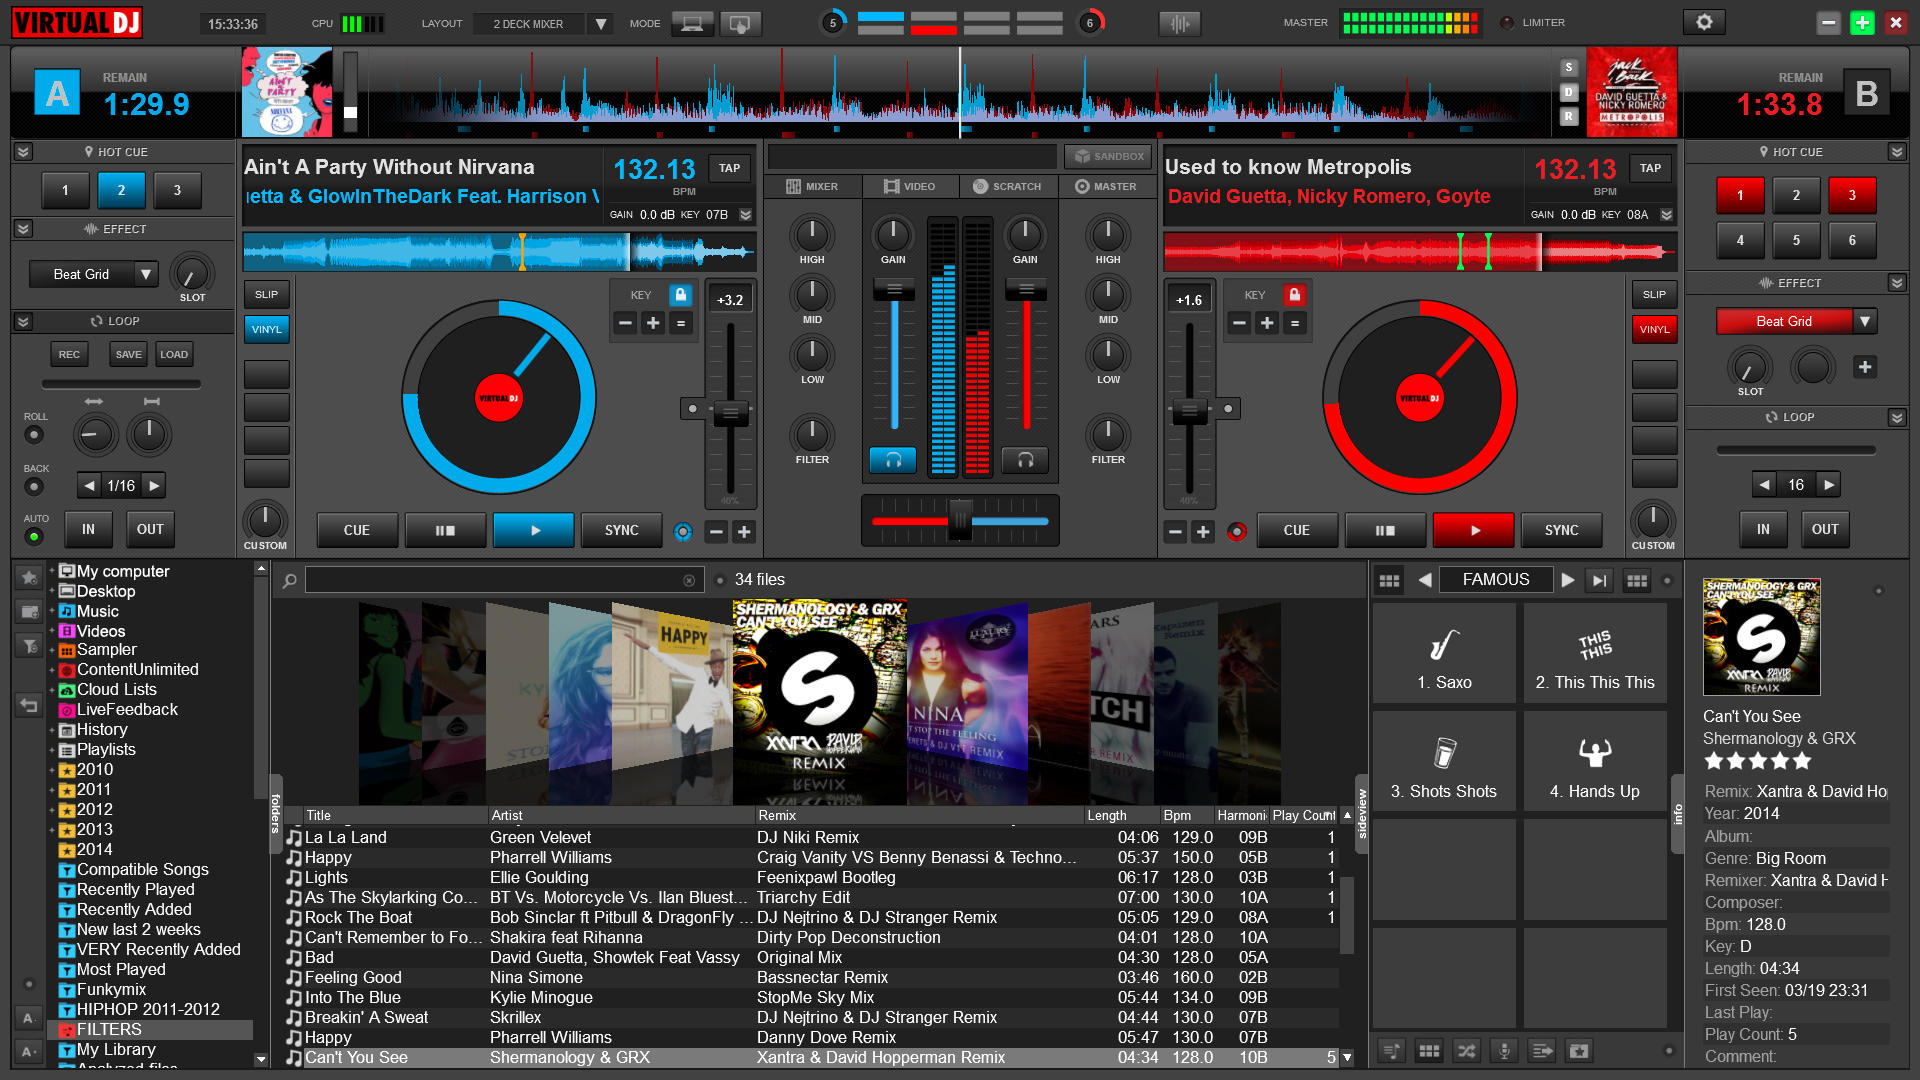 Virtual dj mixer 2013 free download full version pc no virus